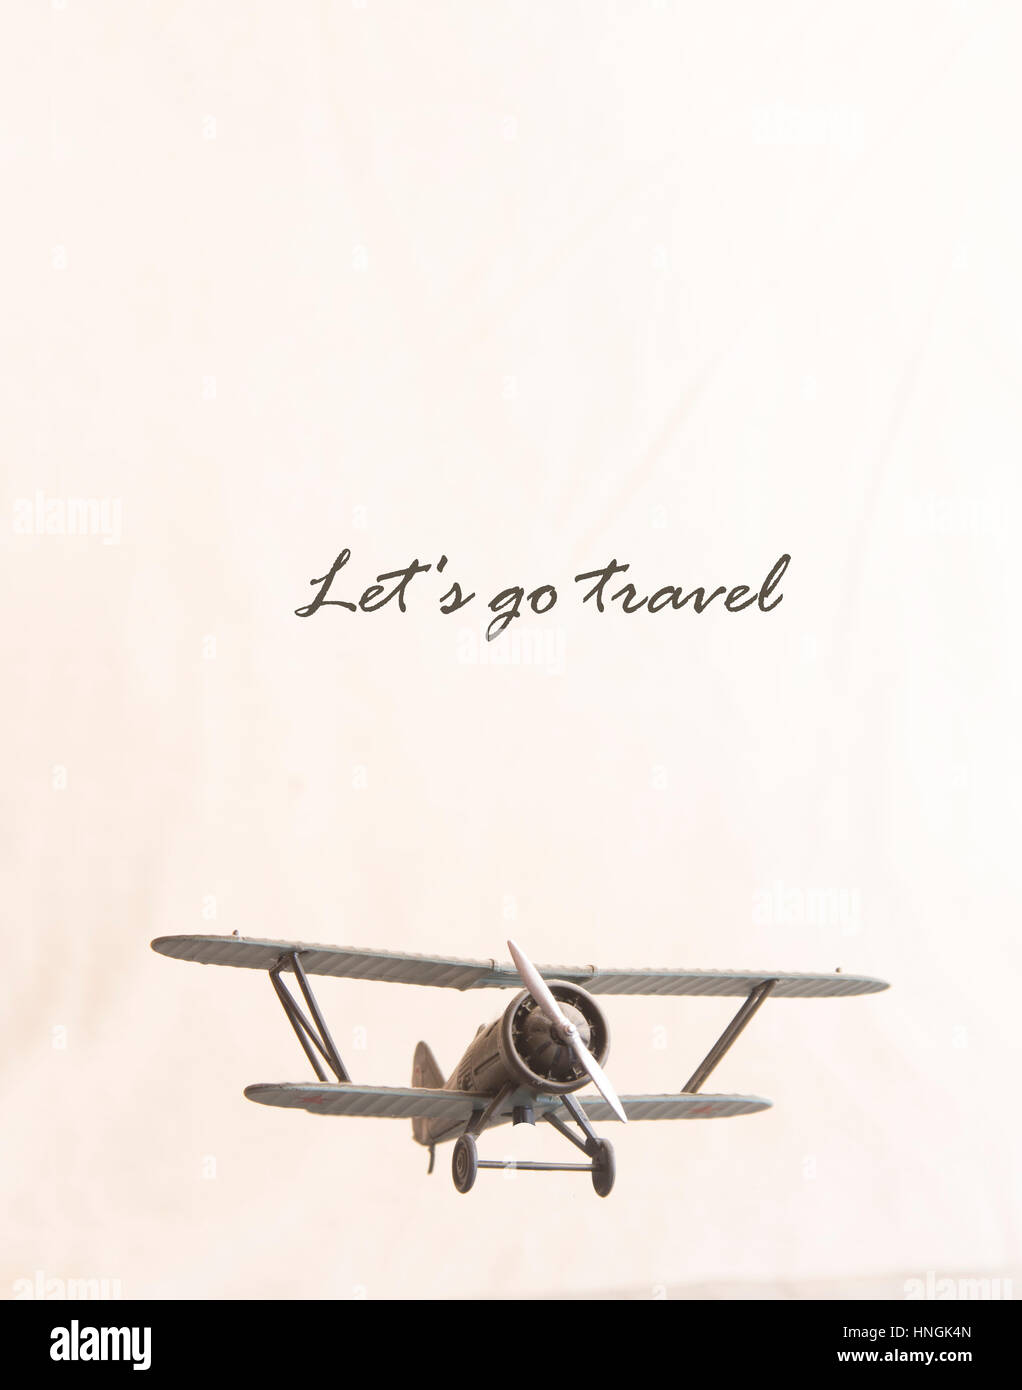 Let's Go Travel Concept - avion rétro et texte Banque D'Images